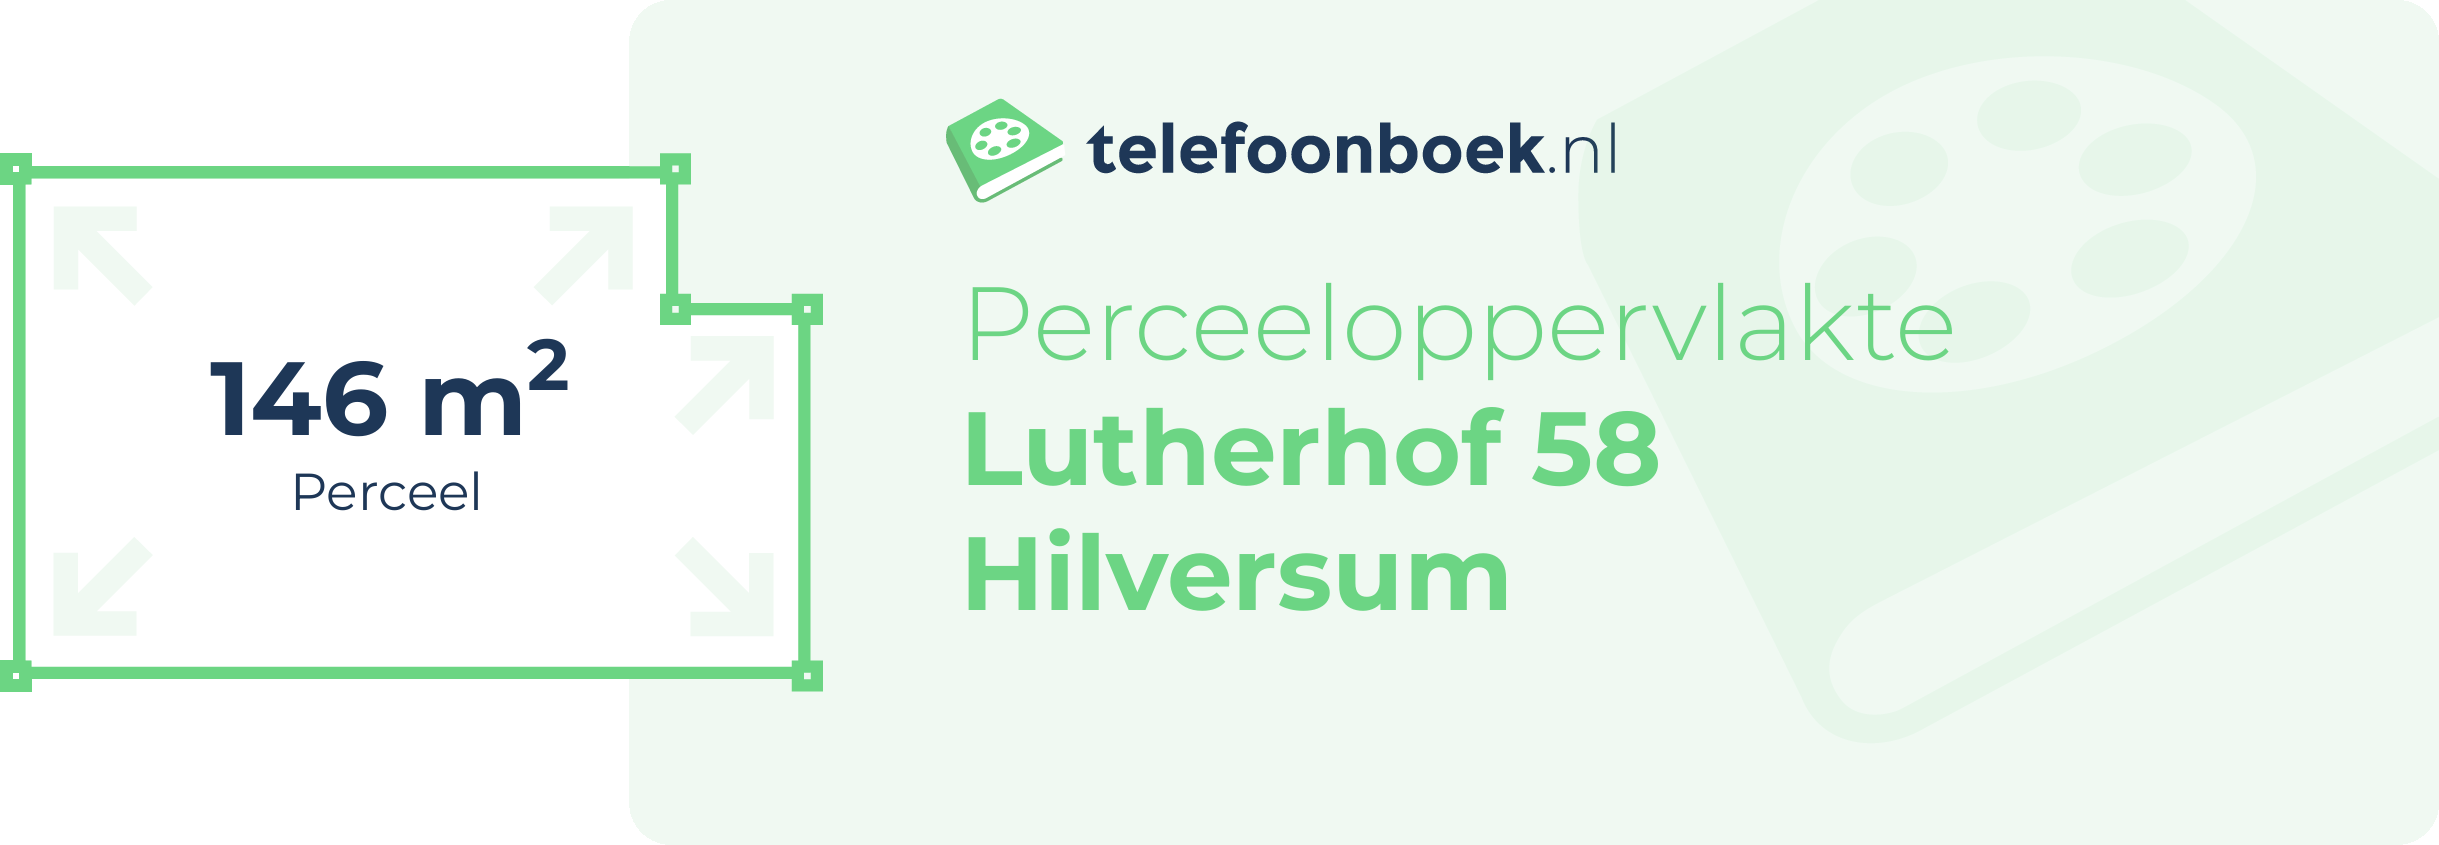 Perceeloppervlakte Lutherhof 58 Hilversum